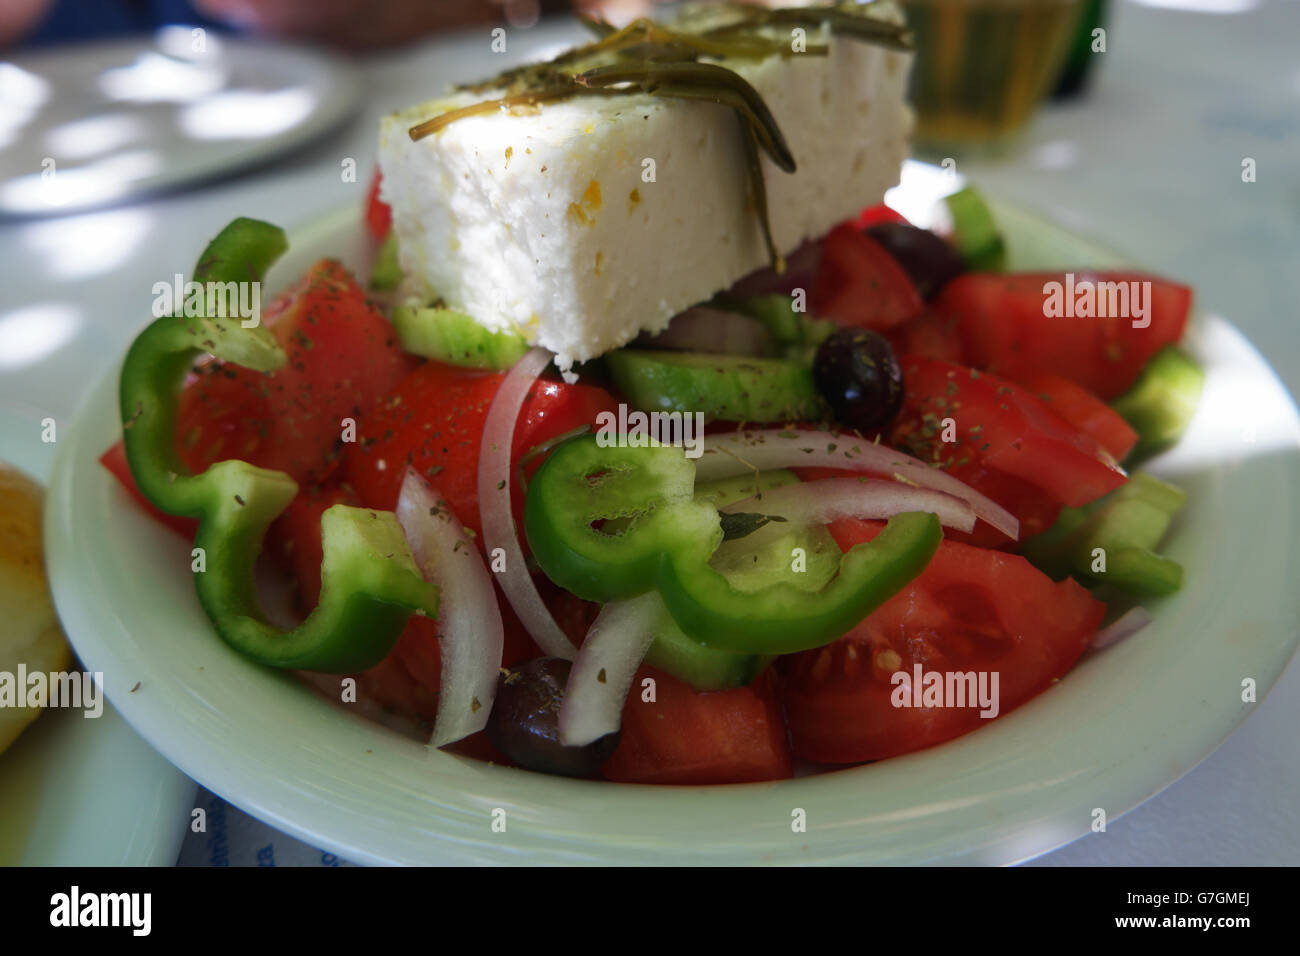 Salade grecque, avec fromage Feta, tourné dans une taverne grecque. Banque D'Images